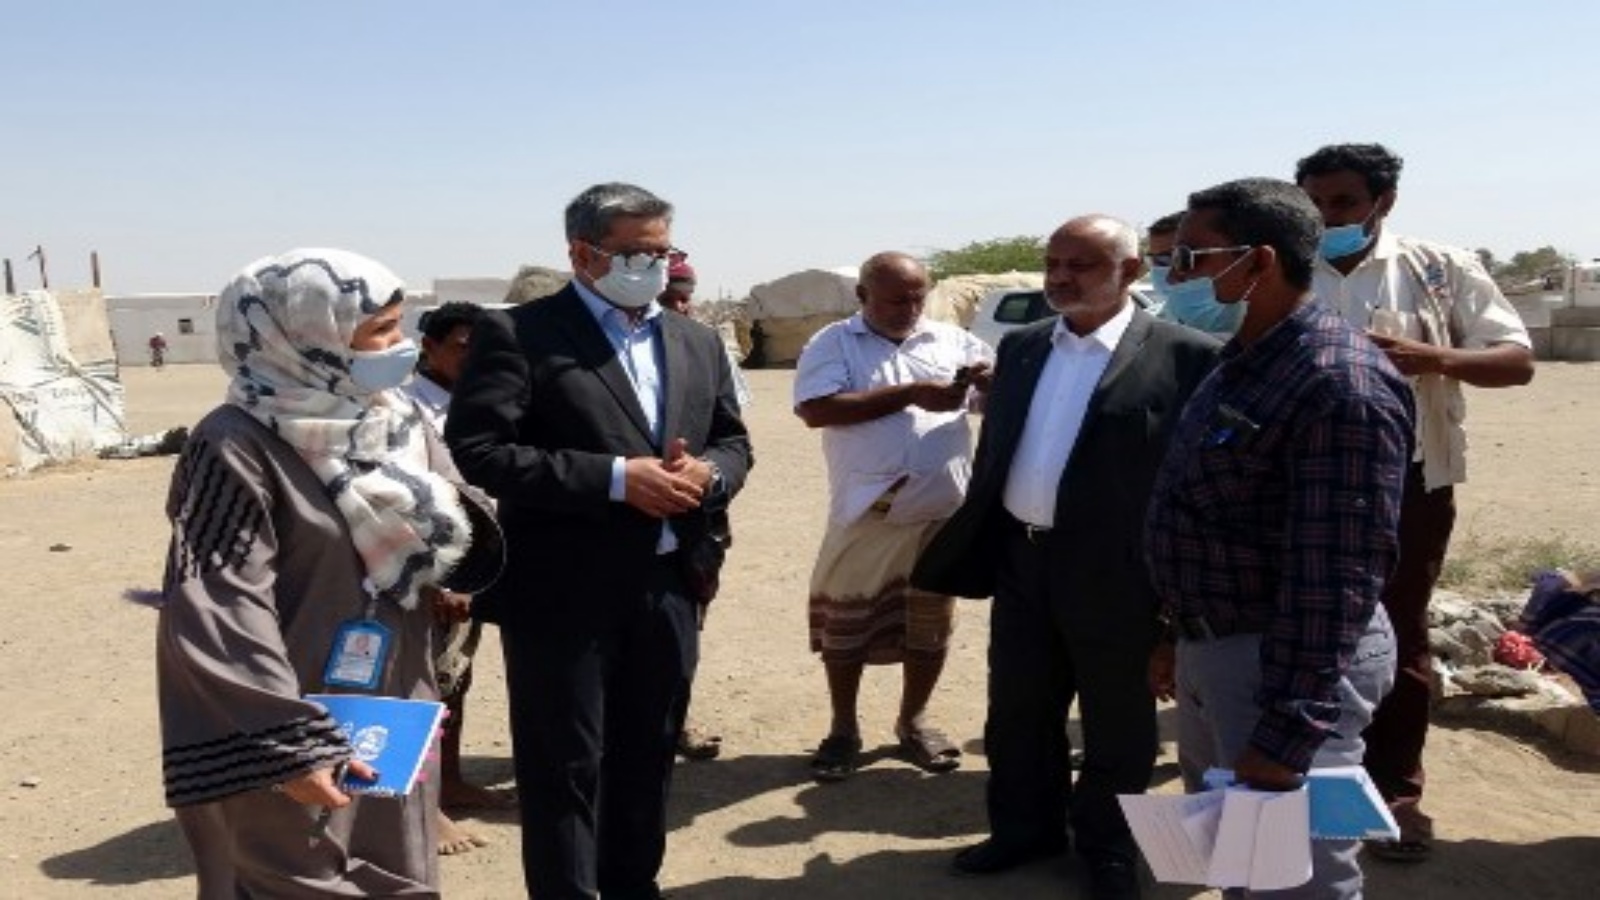 سجاد محمد (2-يسار) ، ممثل مكتب تنسيق الشؤون الإنسانية (OCHA) ، يزور مخيمات النازحين داخليًا في محافظة الحديدة غرب اليمن في 4 فبراير 2021